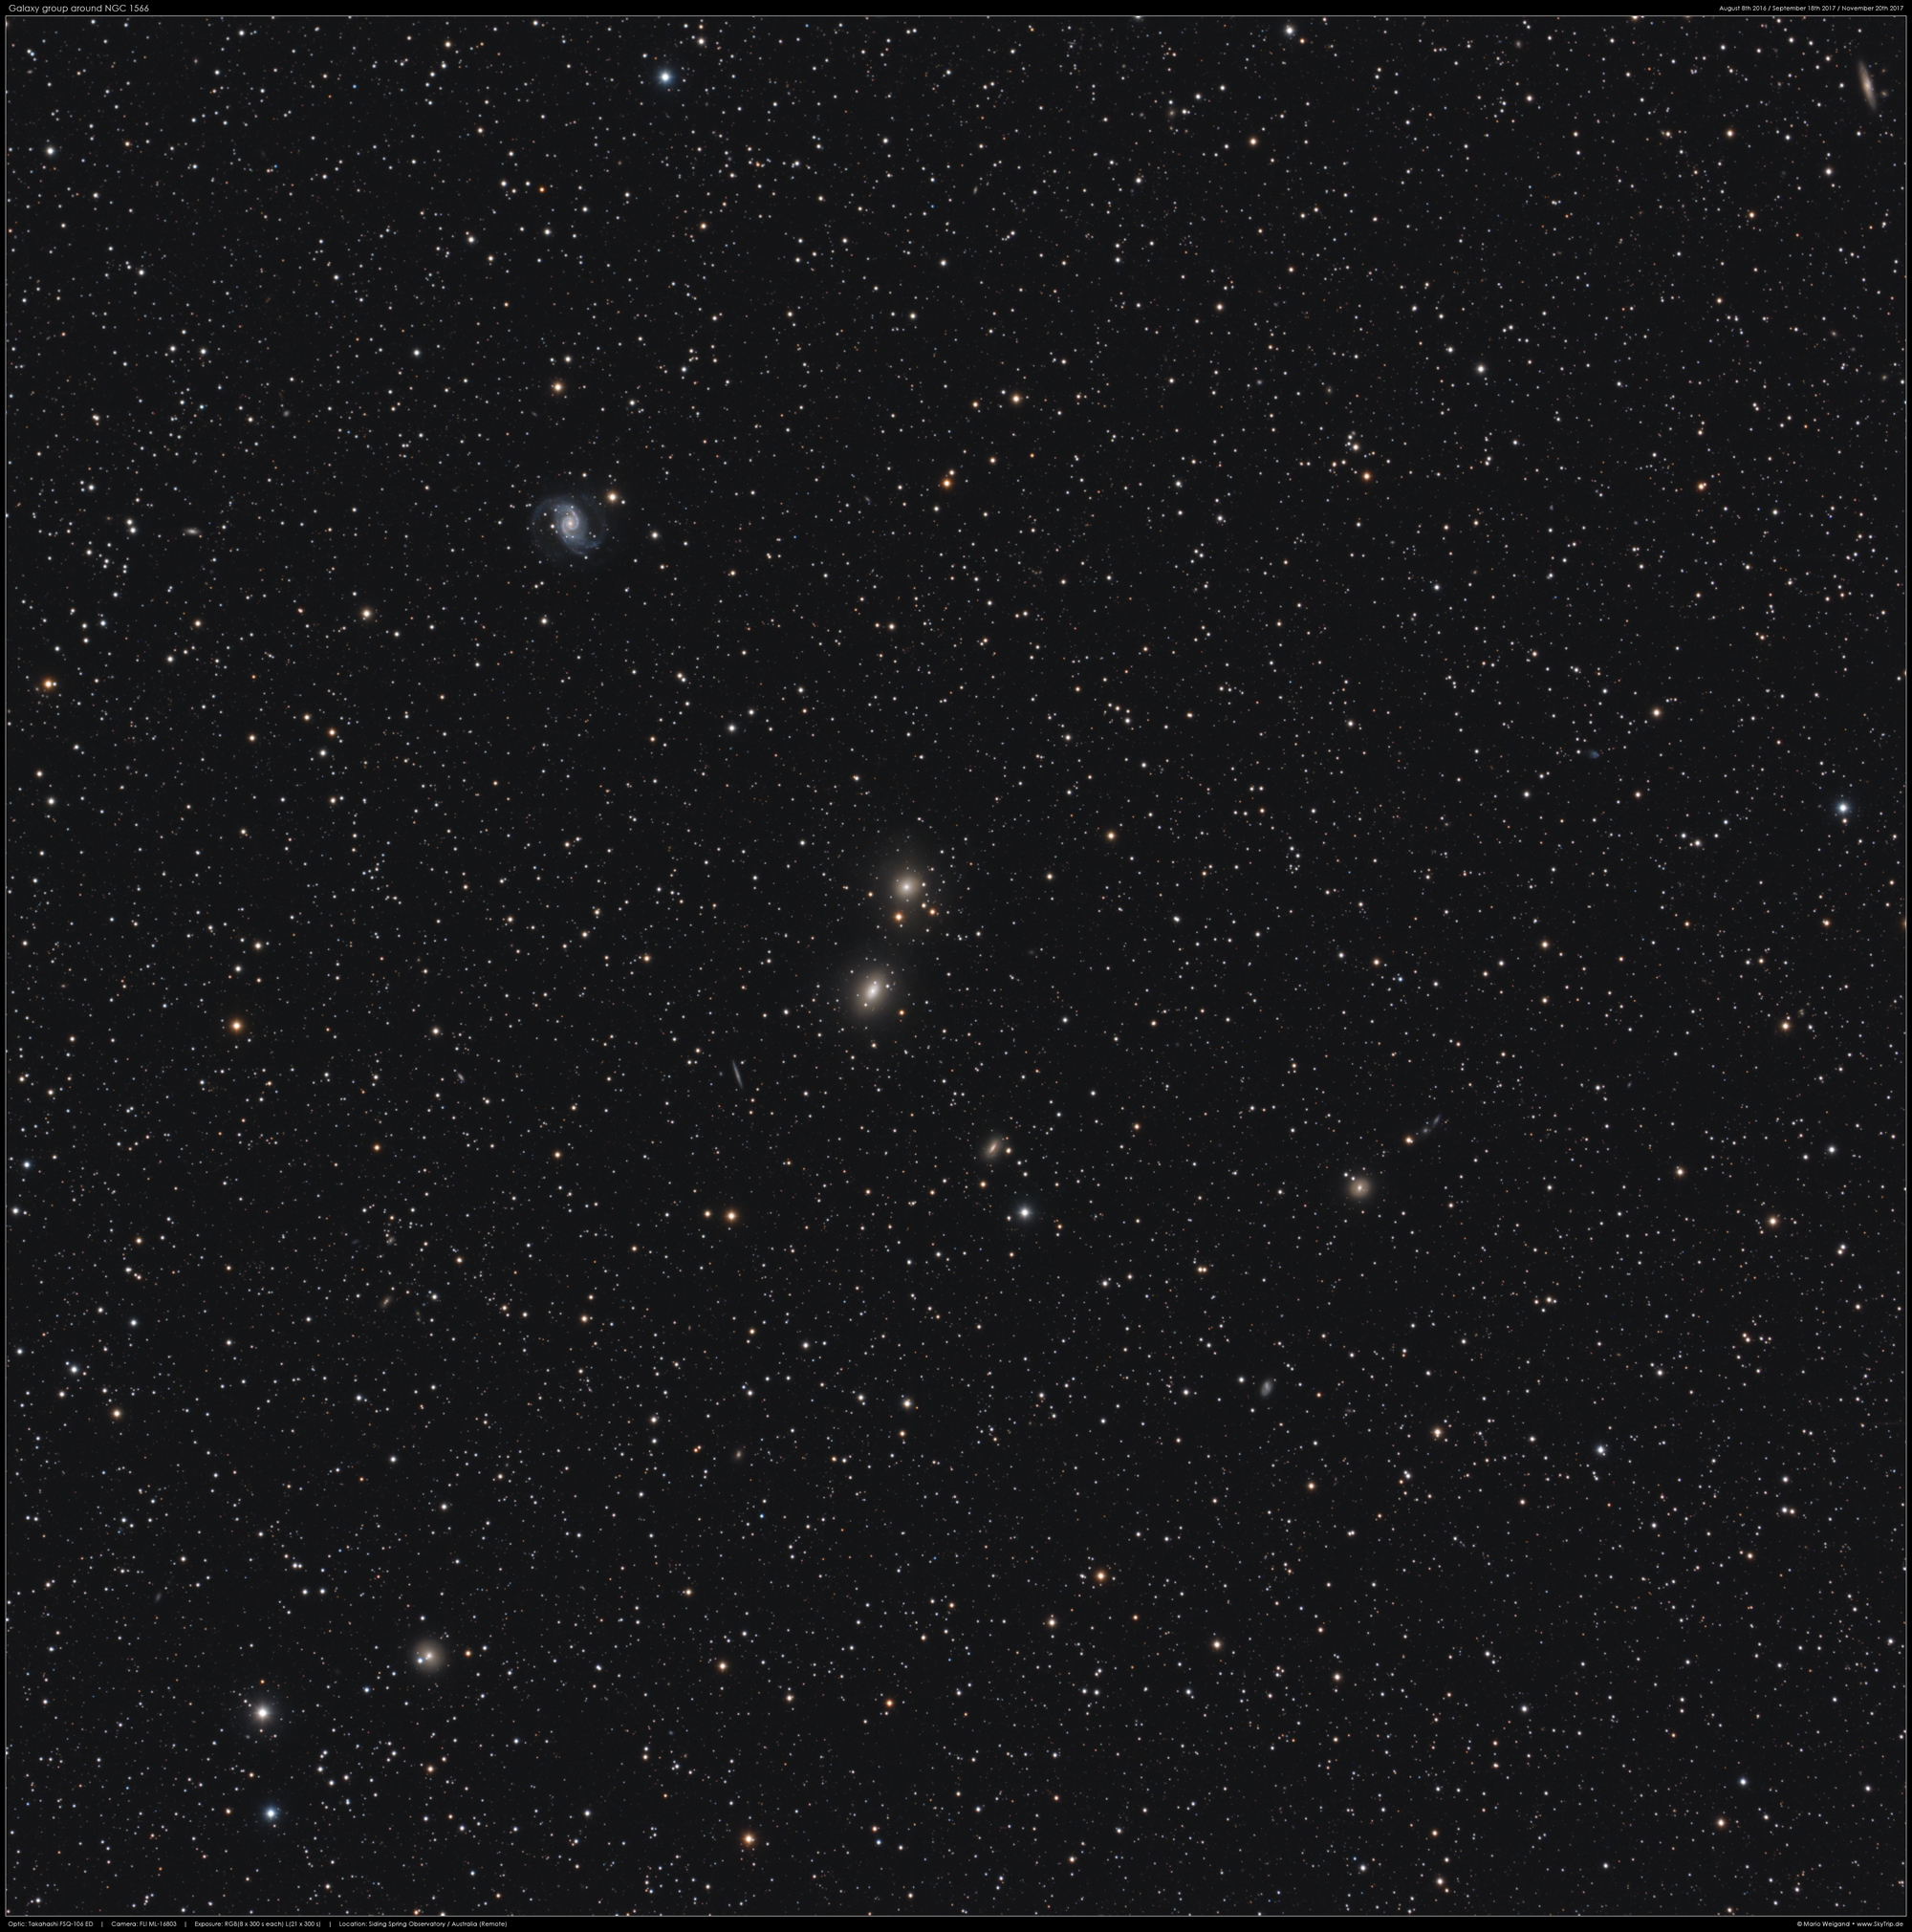 NGC 1566 & Co. in Doradus